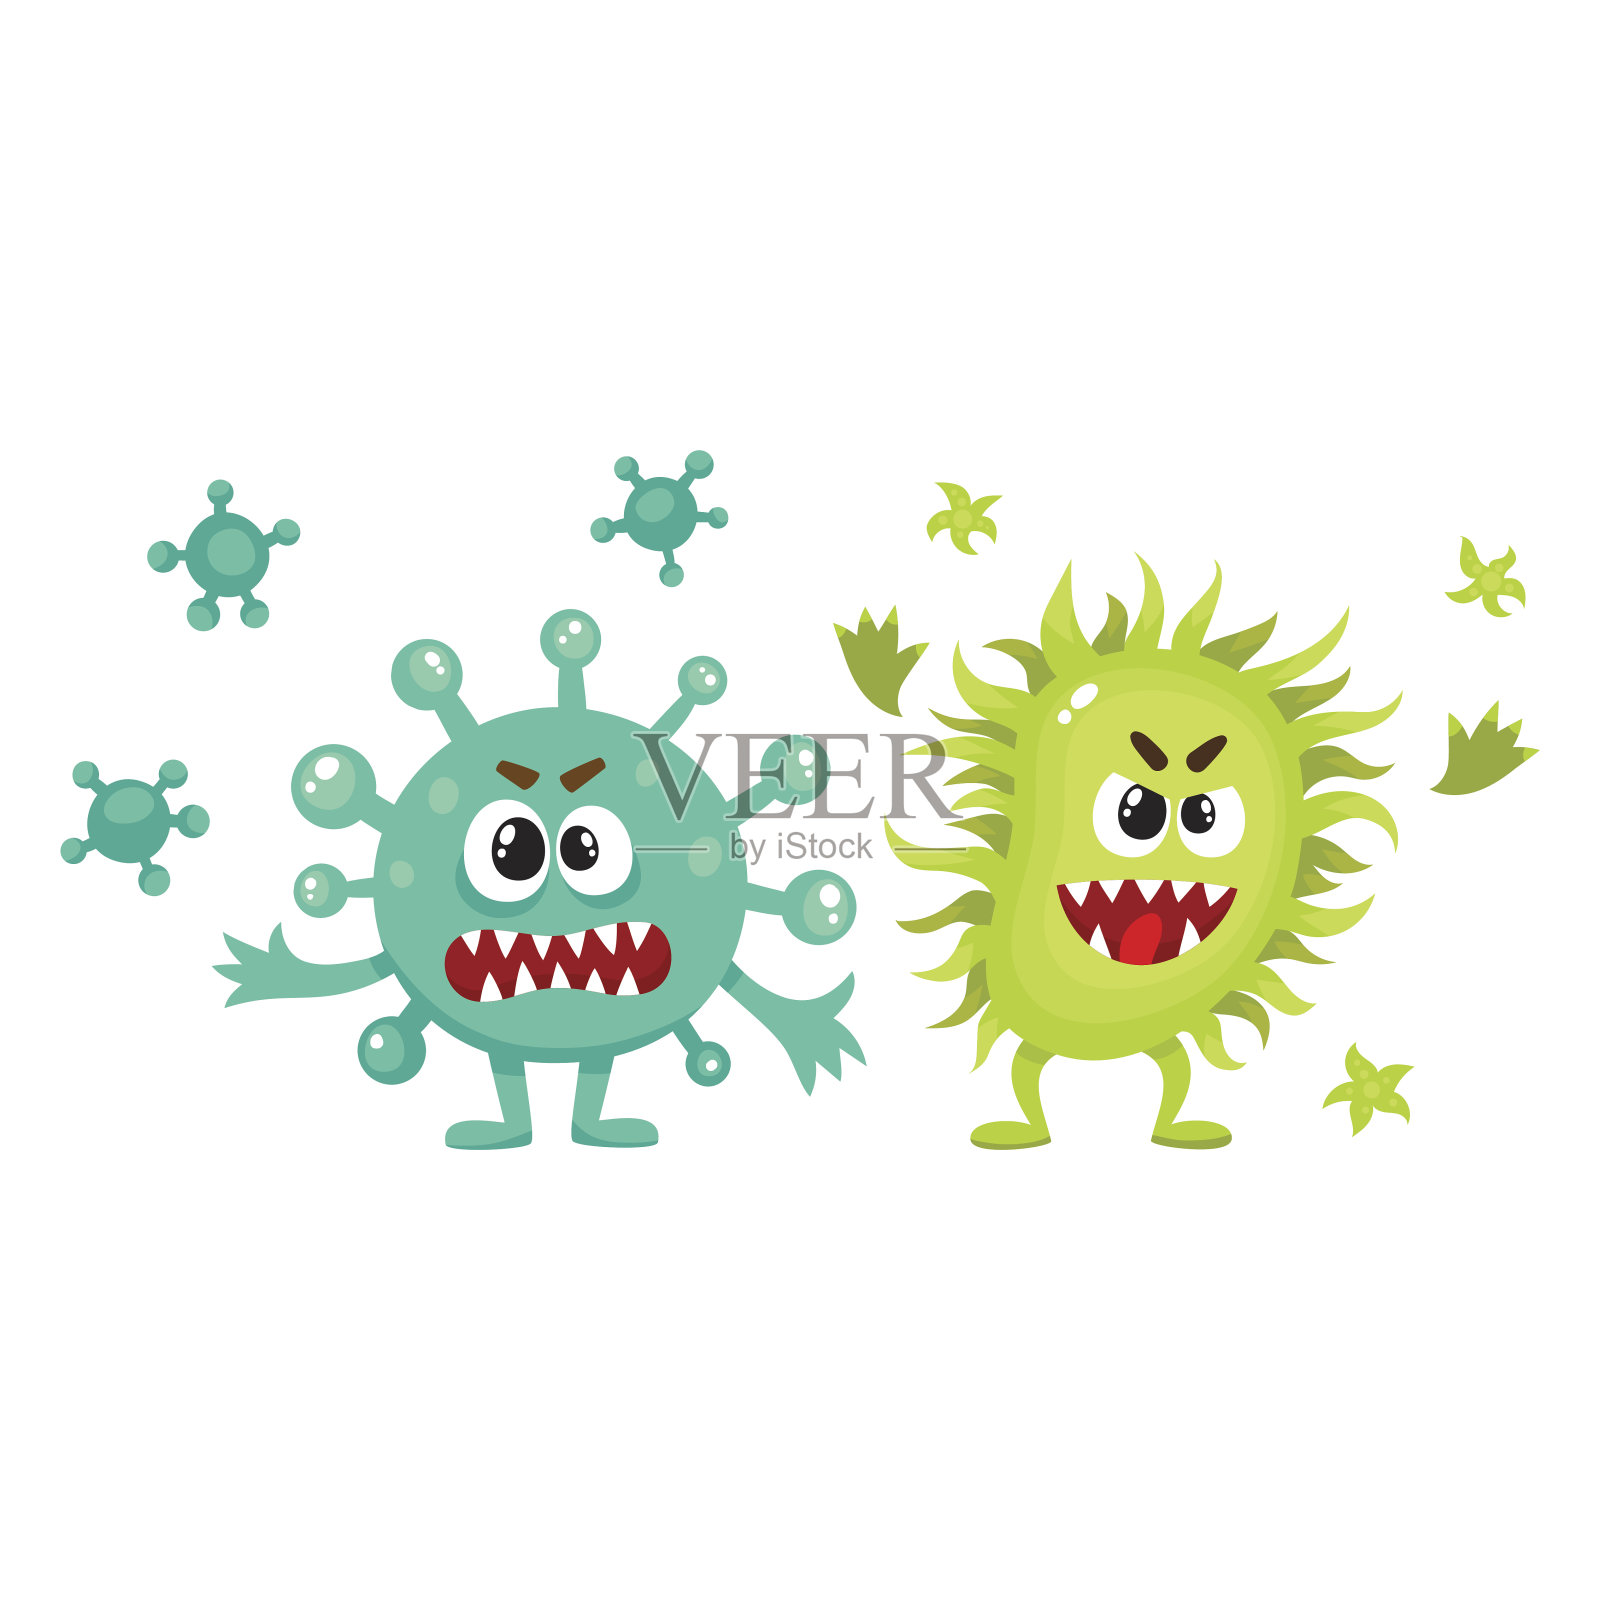 一些病毒，细菌，细菌，微生物的特征和人类的面孔设计元素图片